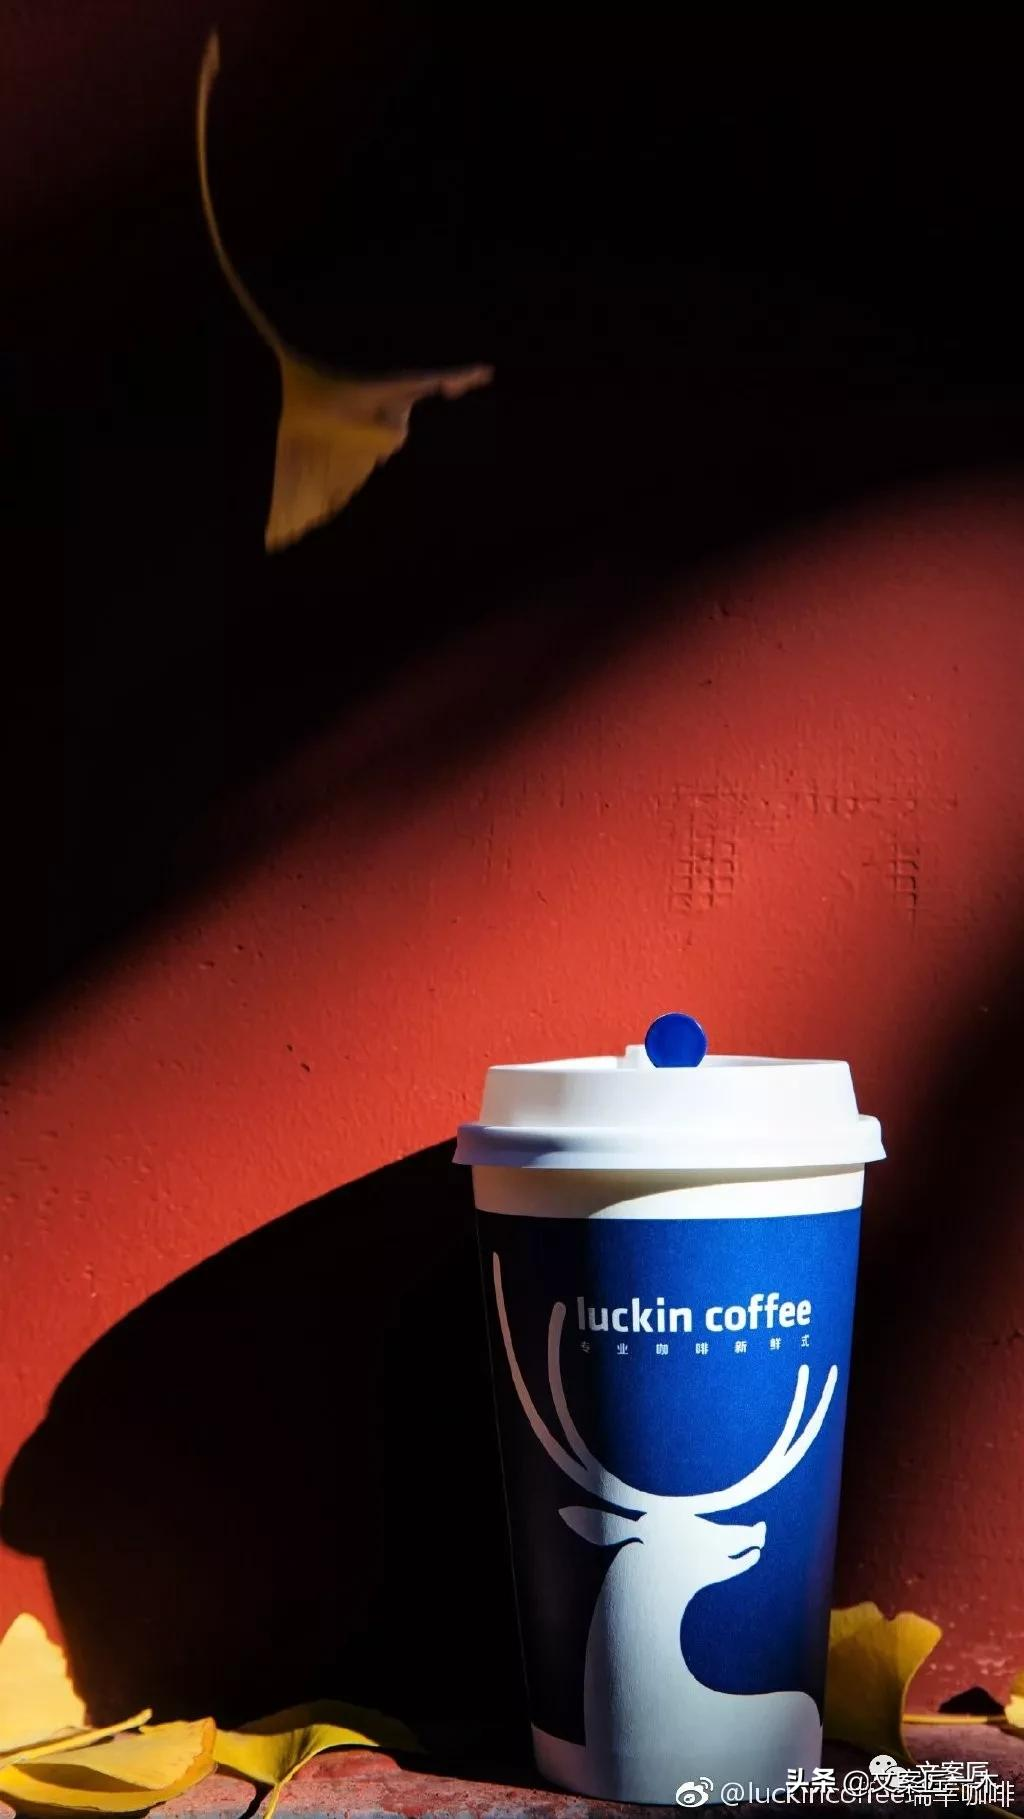 一些牛逼的广告文案，出现在瑞幸咖啡的杯套上